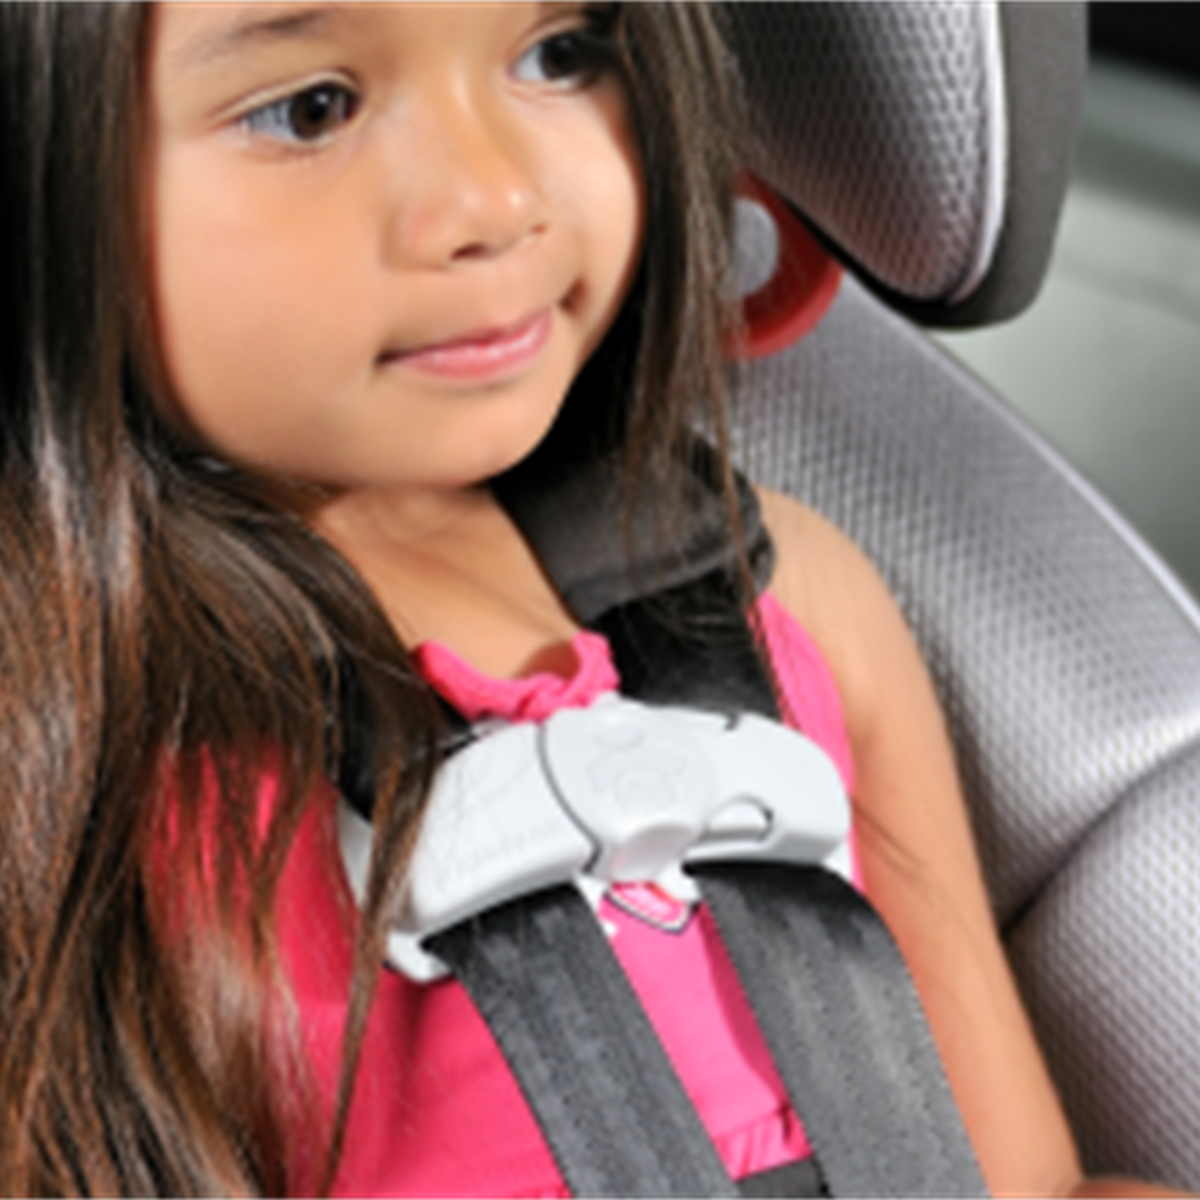 Sillas de seguridad para bebés: una para que su hijo viaje seguro en el auto - HealthyChildren.org